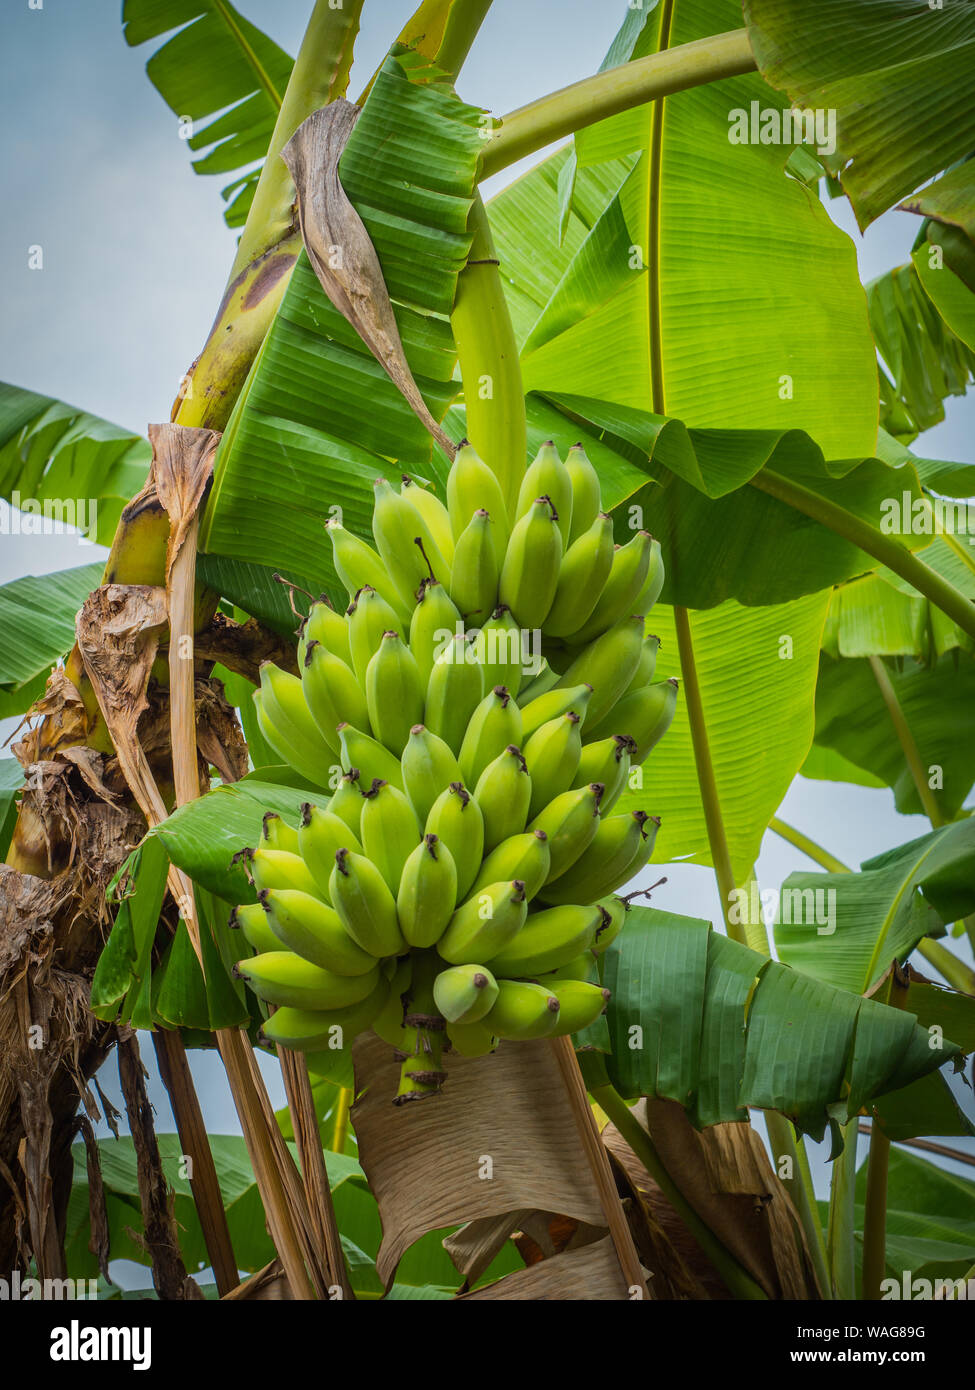 The banana on banana tree with sunlight Stock Photo